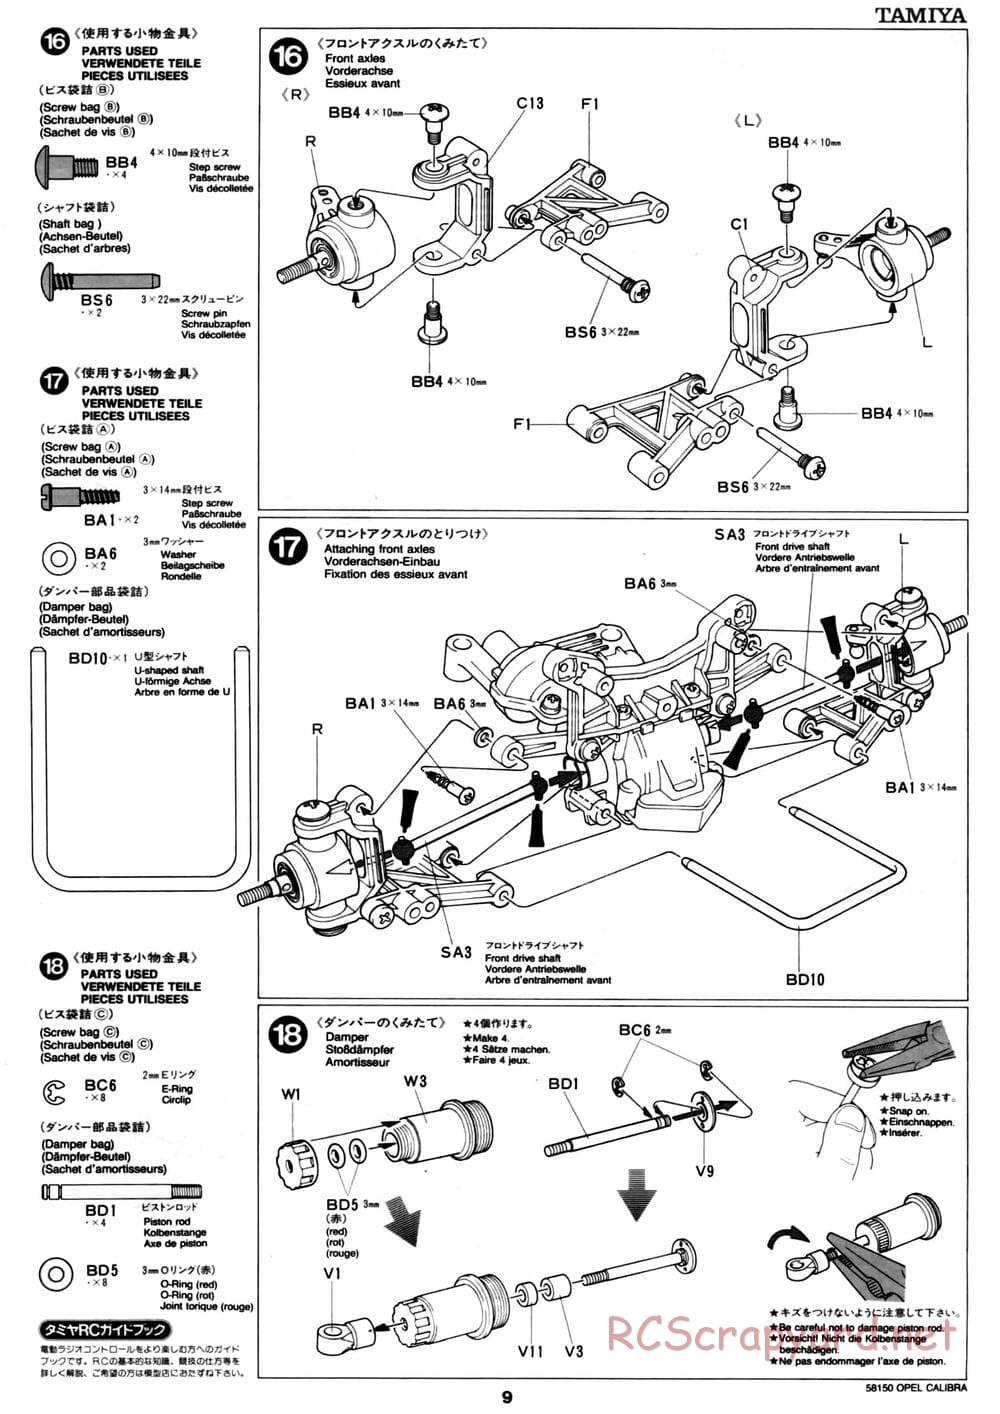 Tamiya - Opel Calibra V6 DTM - TA-02 Chassis - Manual - Page 9